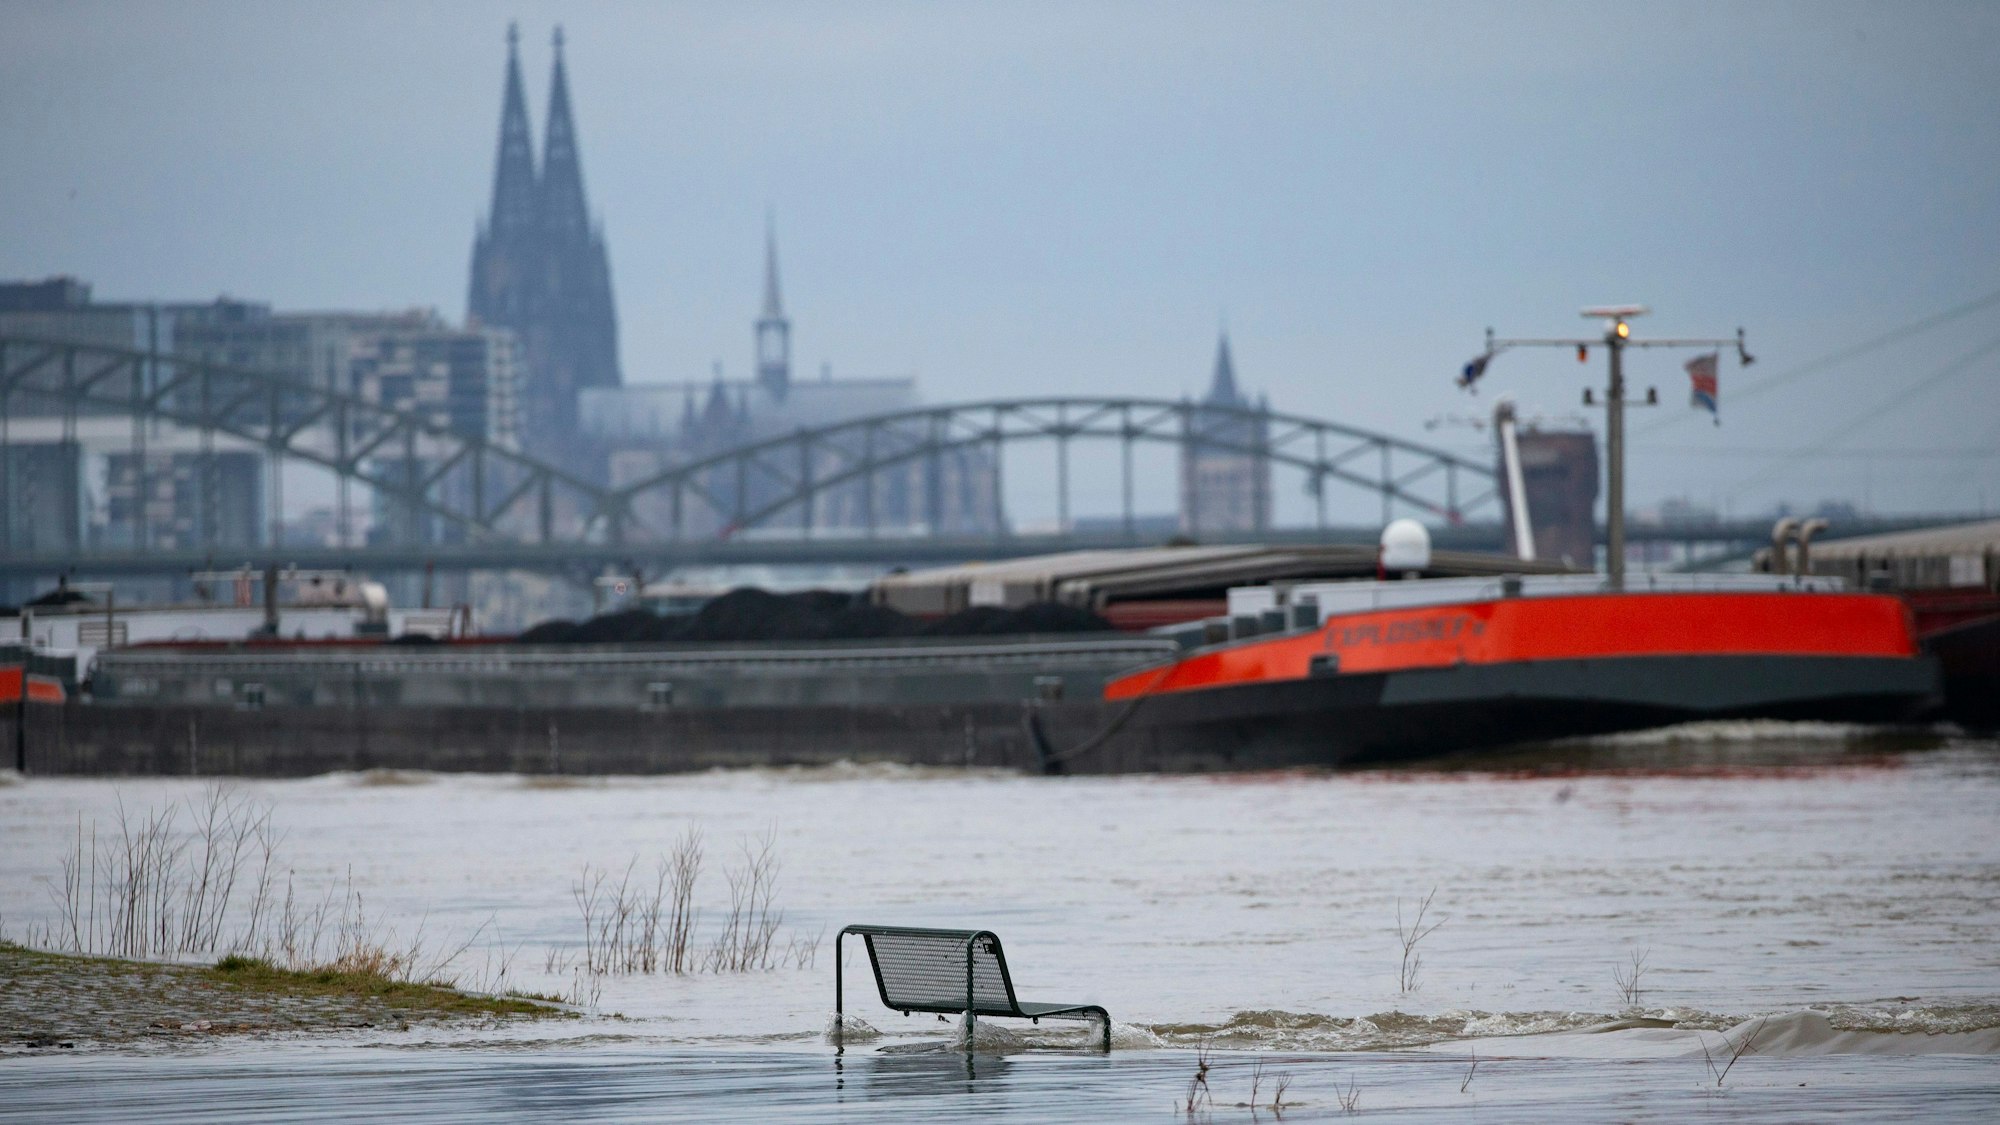 Binnenschiffe fahren auf dem Rhein vor der Kulisse des Kölner Doms, im Vordergrund steht eine vom Wasser umspülte Sitzbank.